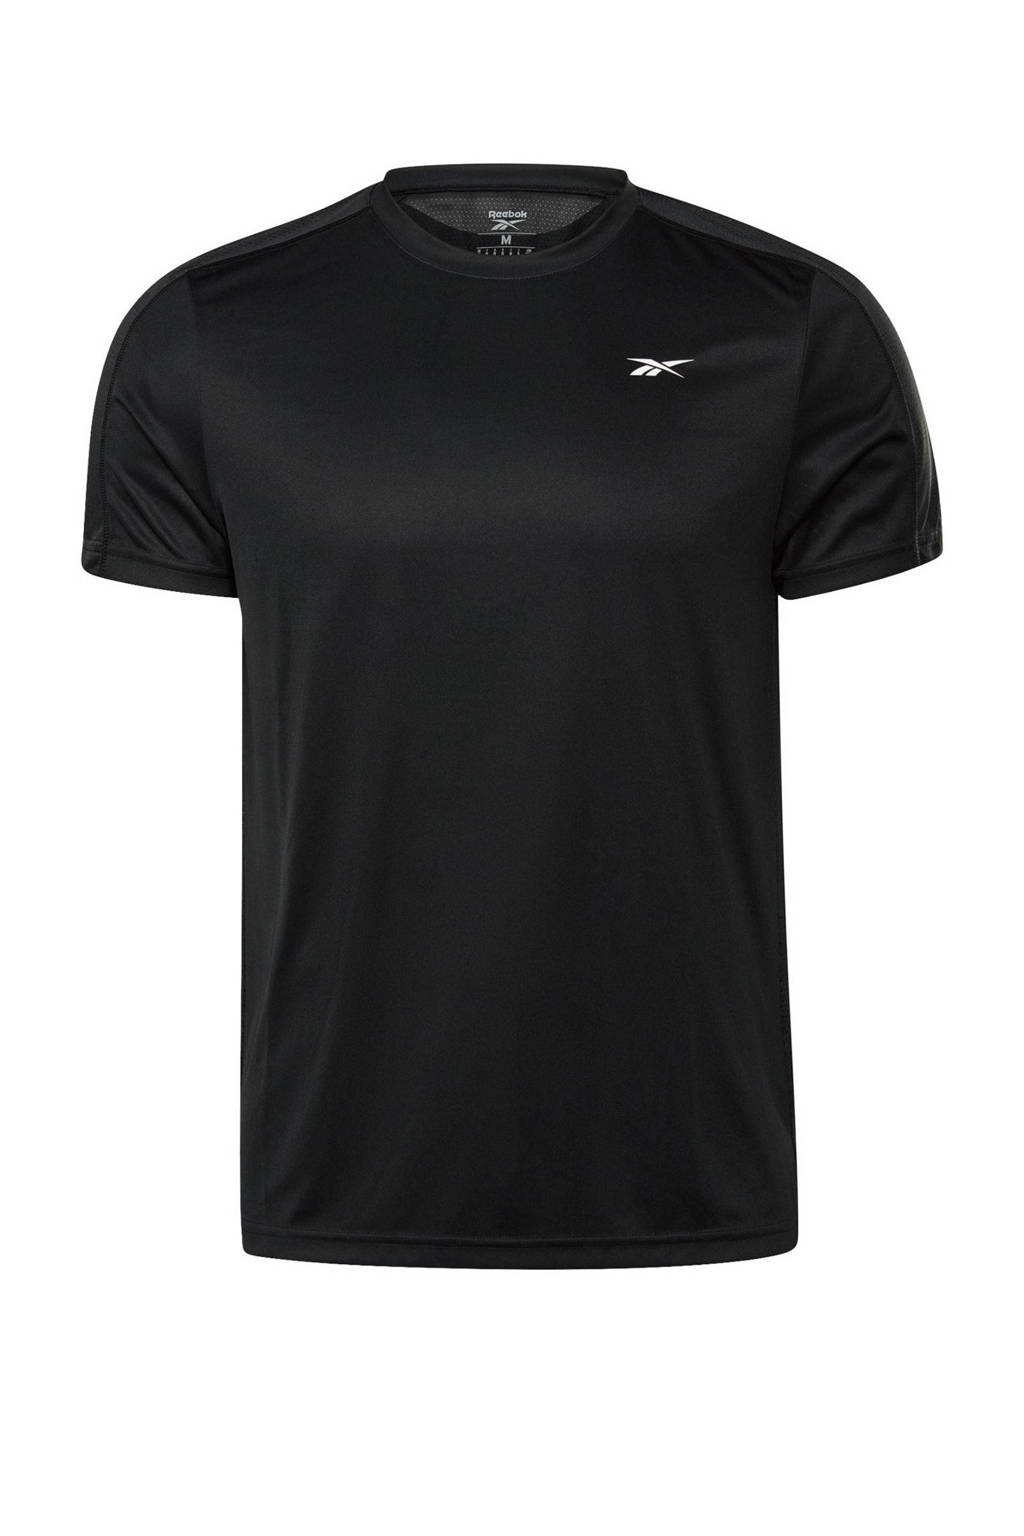 Reebok Training   sport T-shirt zwart